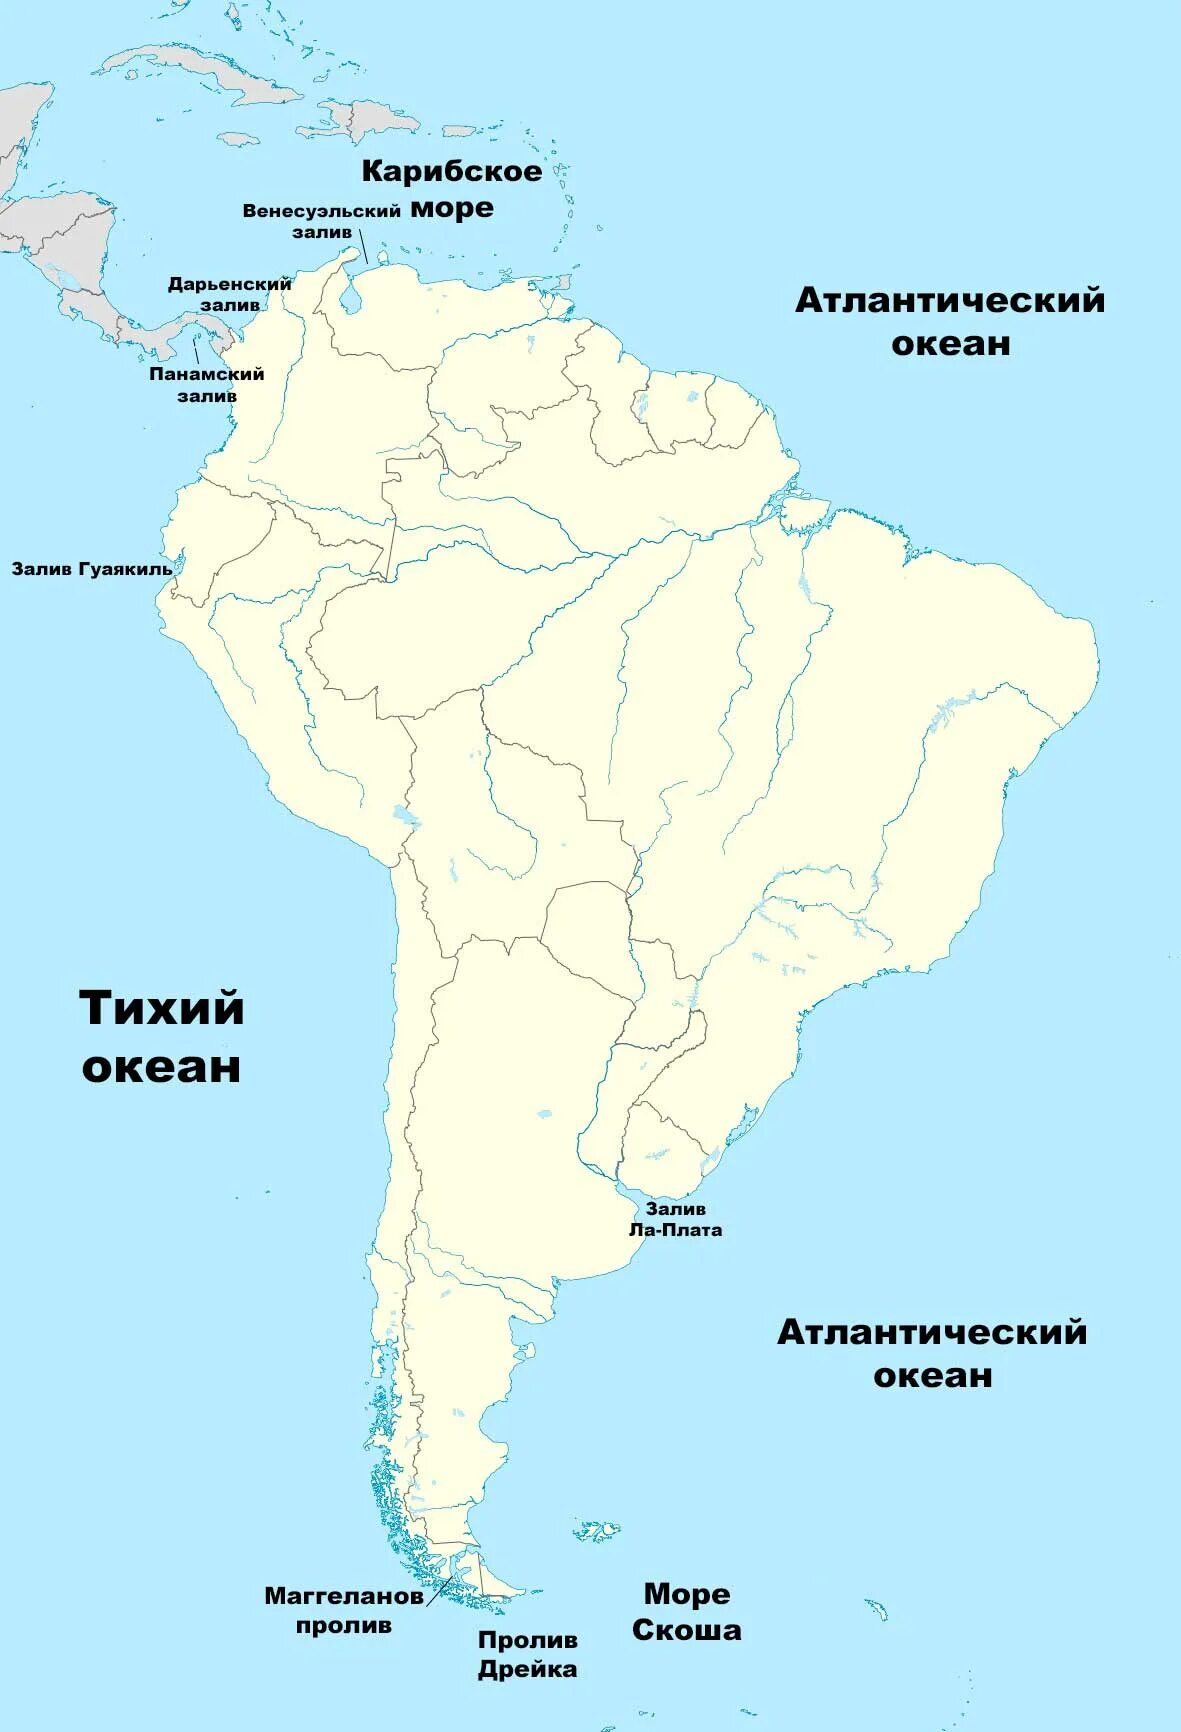 Карта Южной Америки с морями заливами проливами. Океаны моря заливы проливы Южной Америки на карте. Южная Америка океаны моря заливы проливы каналы. Южной Америки океана моря проливы карты. Подпишите на контурной карте южной америки названия